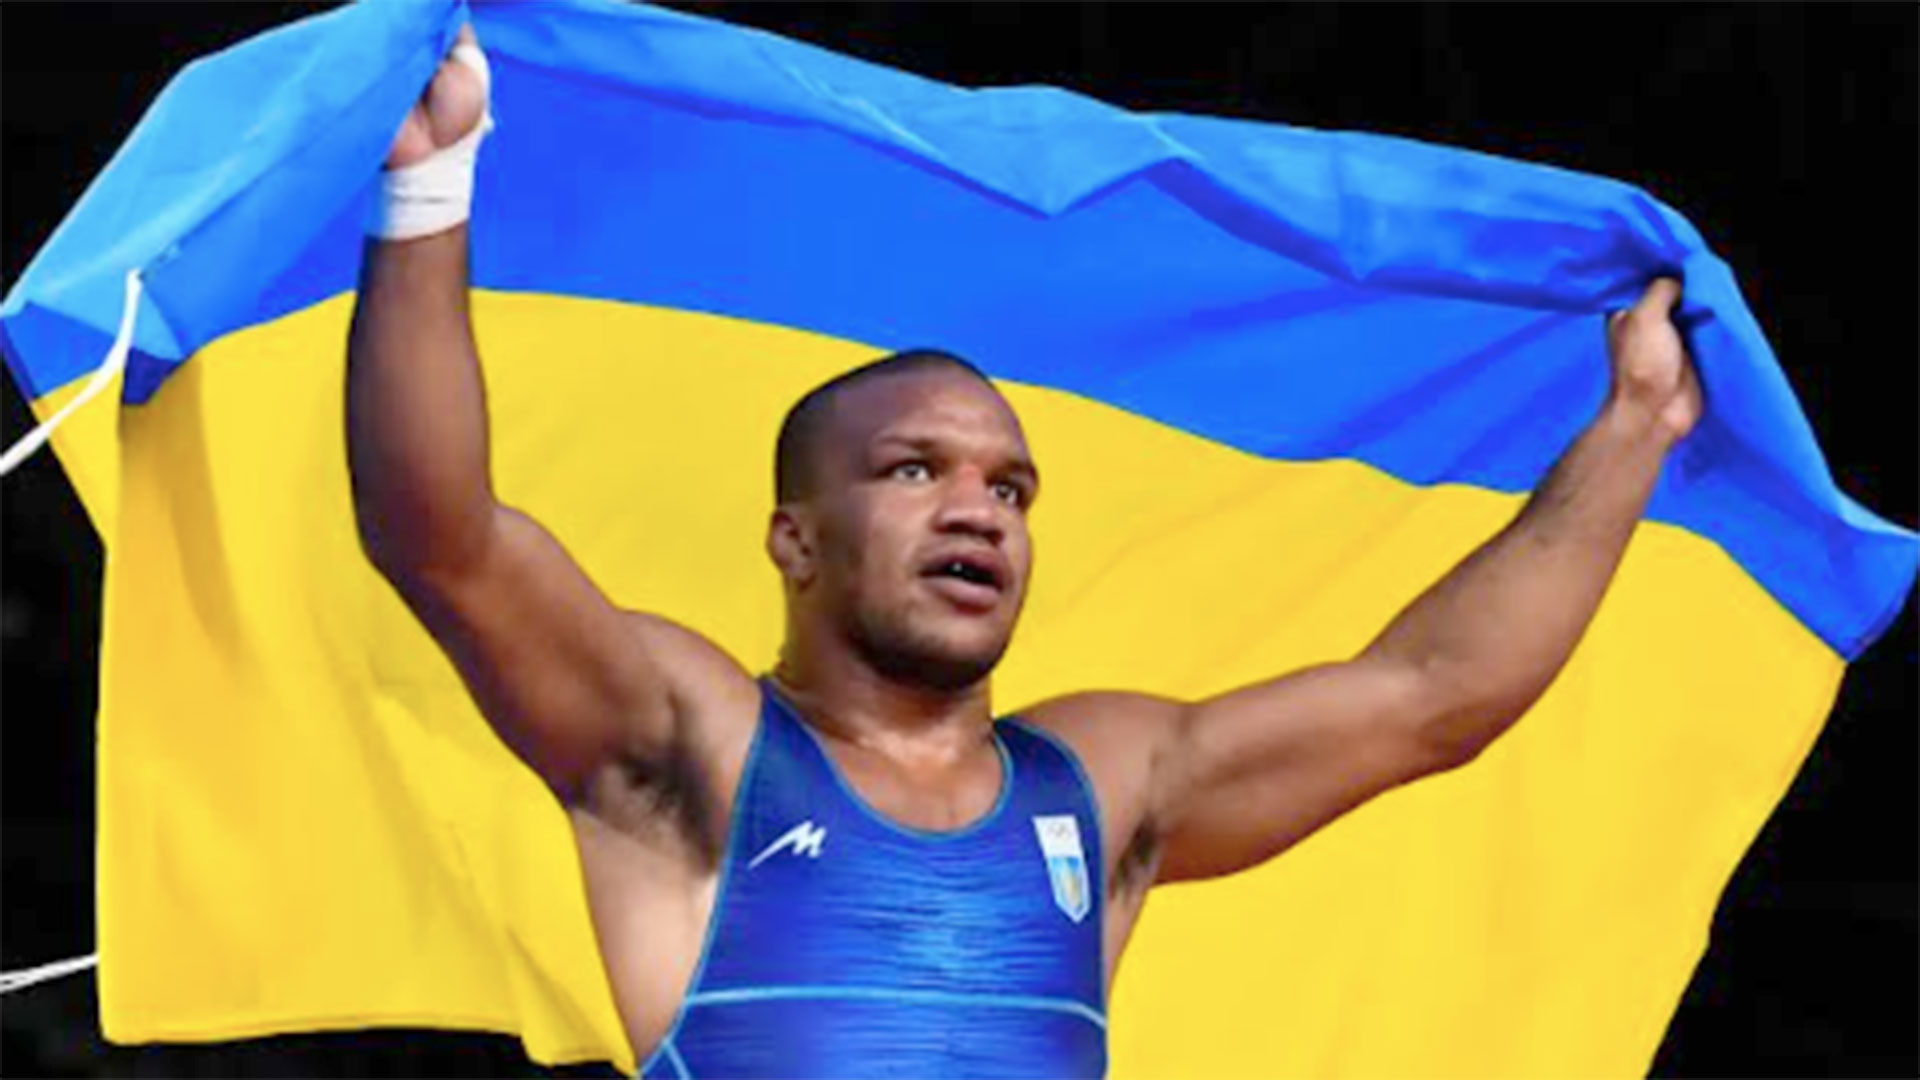 El luchador grecorromano Zhan Belaniuk enarbola la bandera ucraniana en Tokio 2020. Obtuvo la única medalla dorada de Ucrania en los pasados Juegos